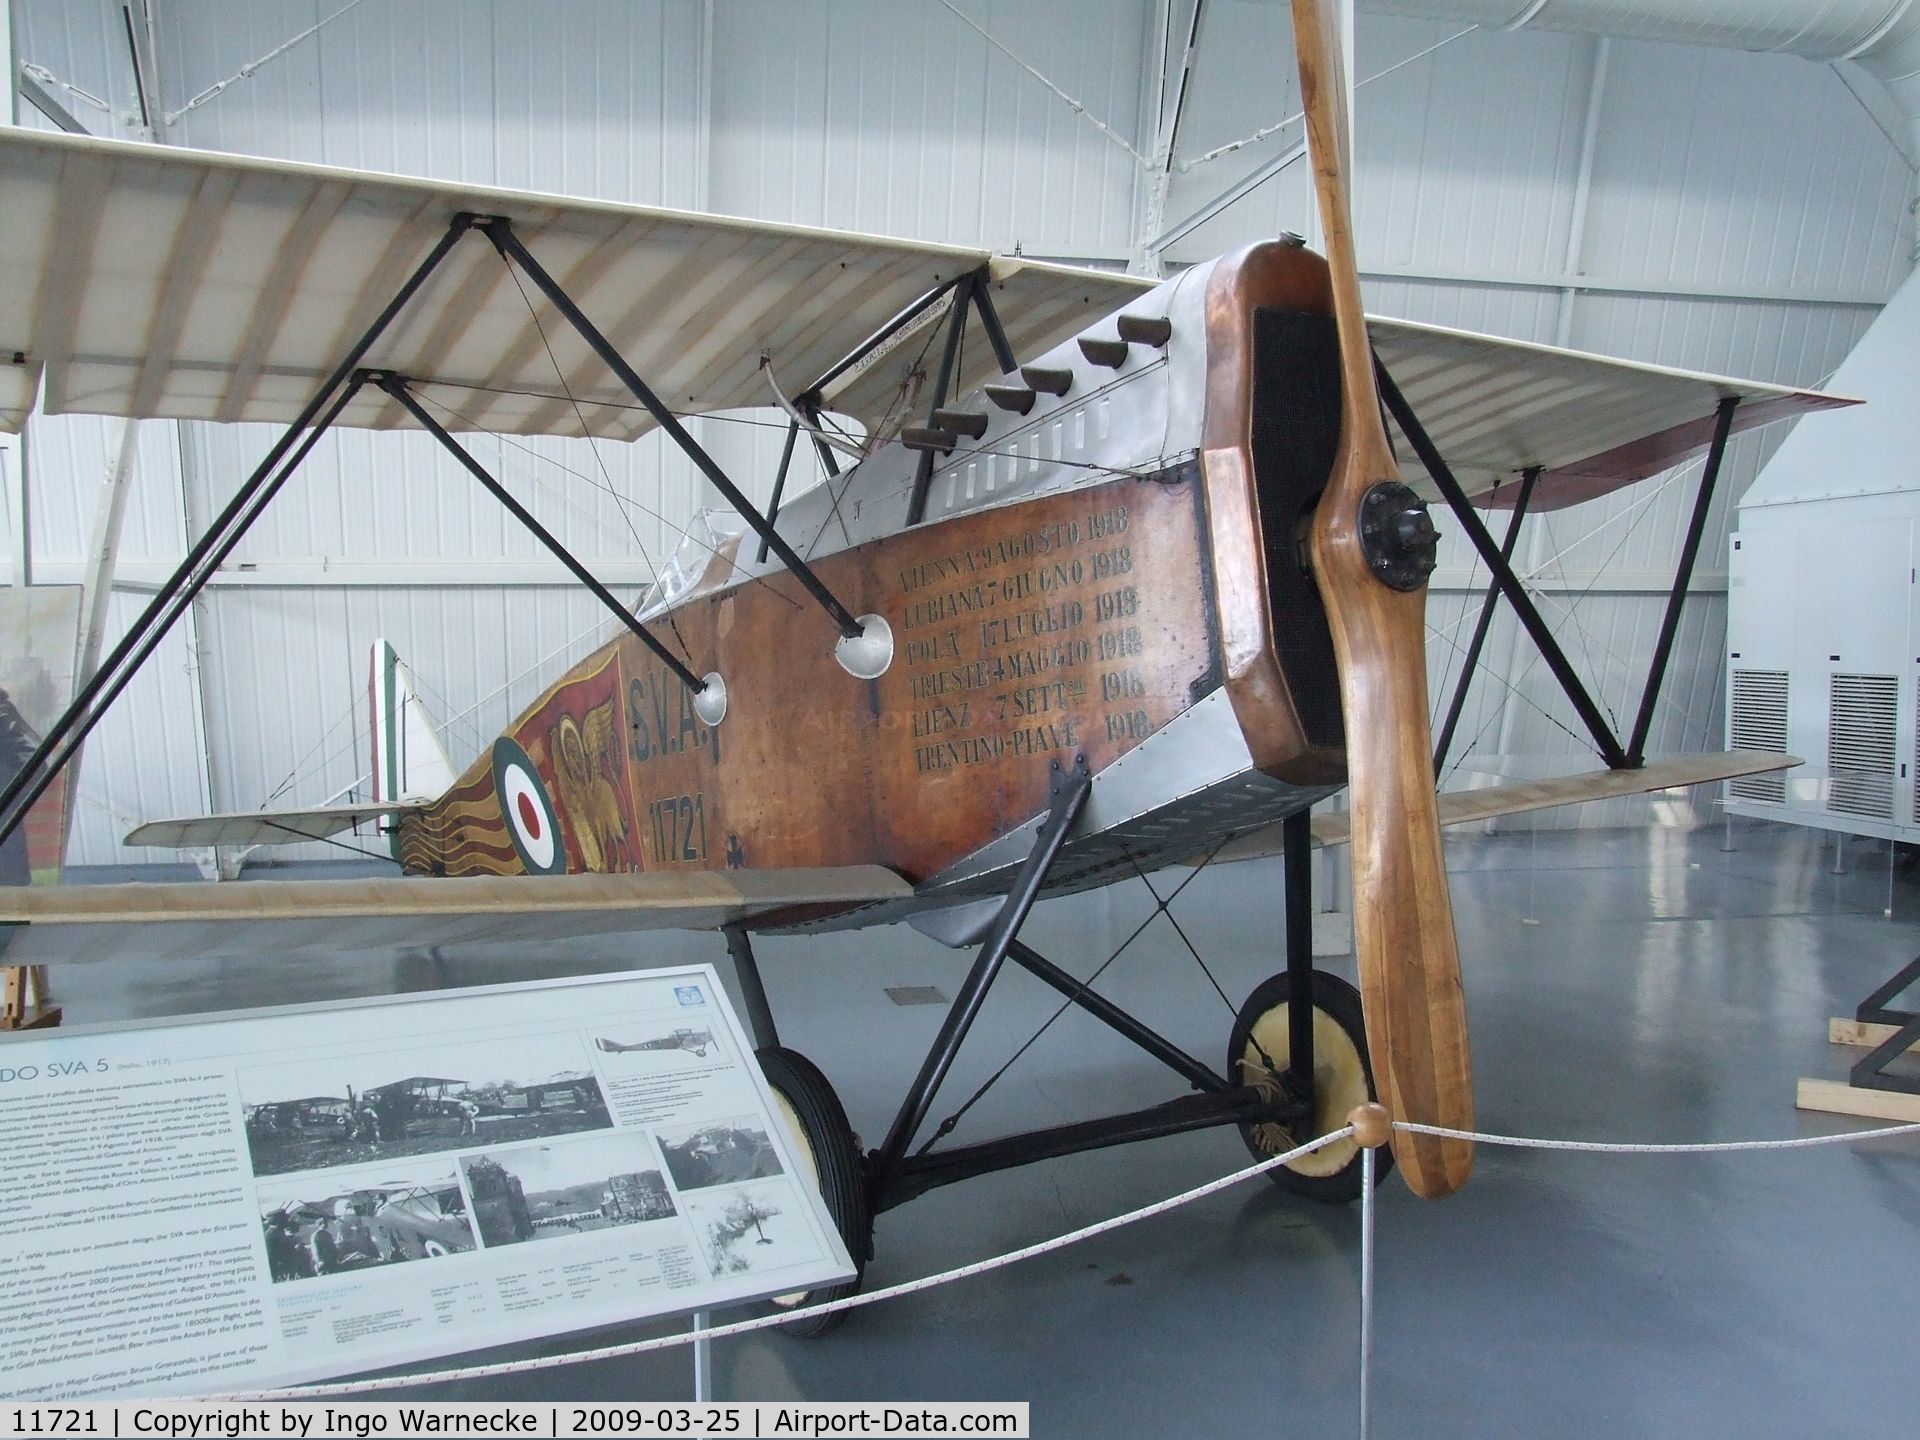 11721, Ansaldo S.V.A.5 C/N Not found 11721, Ansaldo S.V.A.5 at the Museo storico dell'Aeronautica Militare, Vigna di Valle